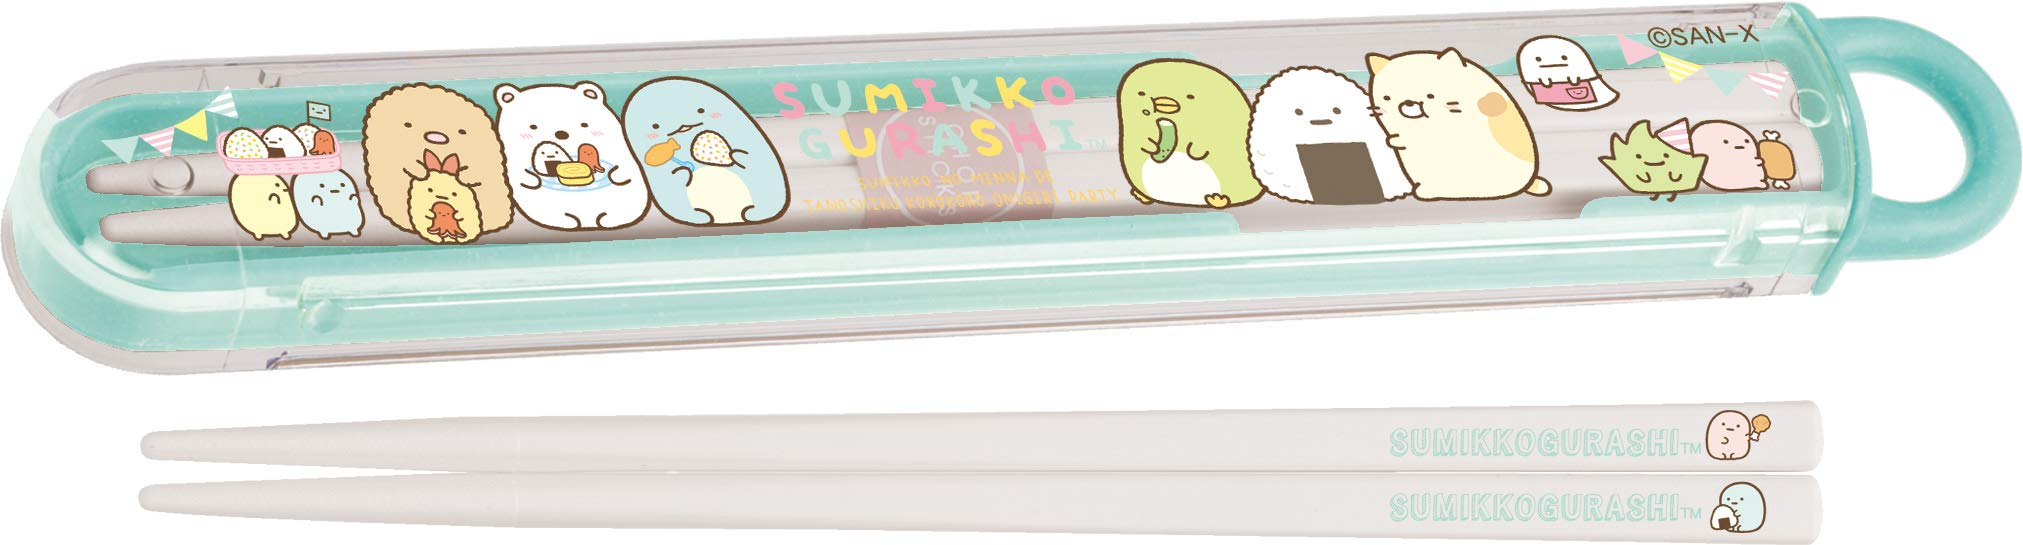 San-X Sumikko Gurashi Chopsticks Chopsticks Box Ky72901